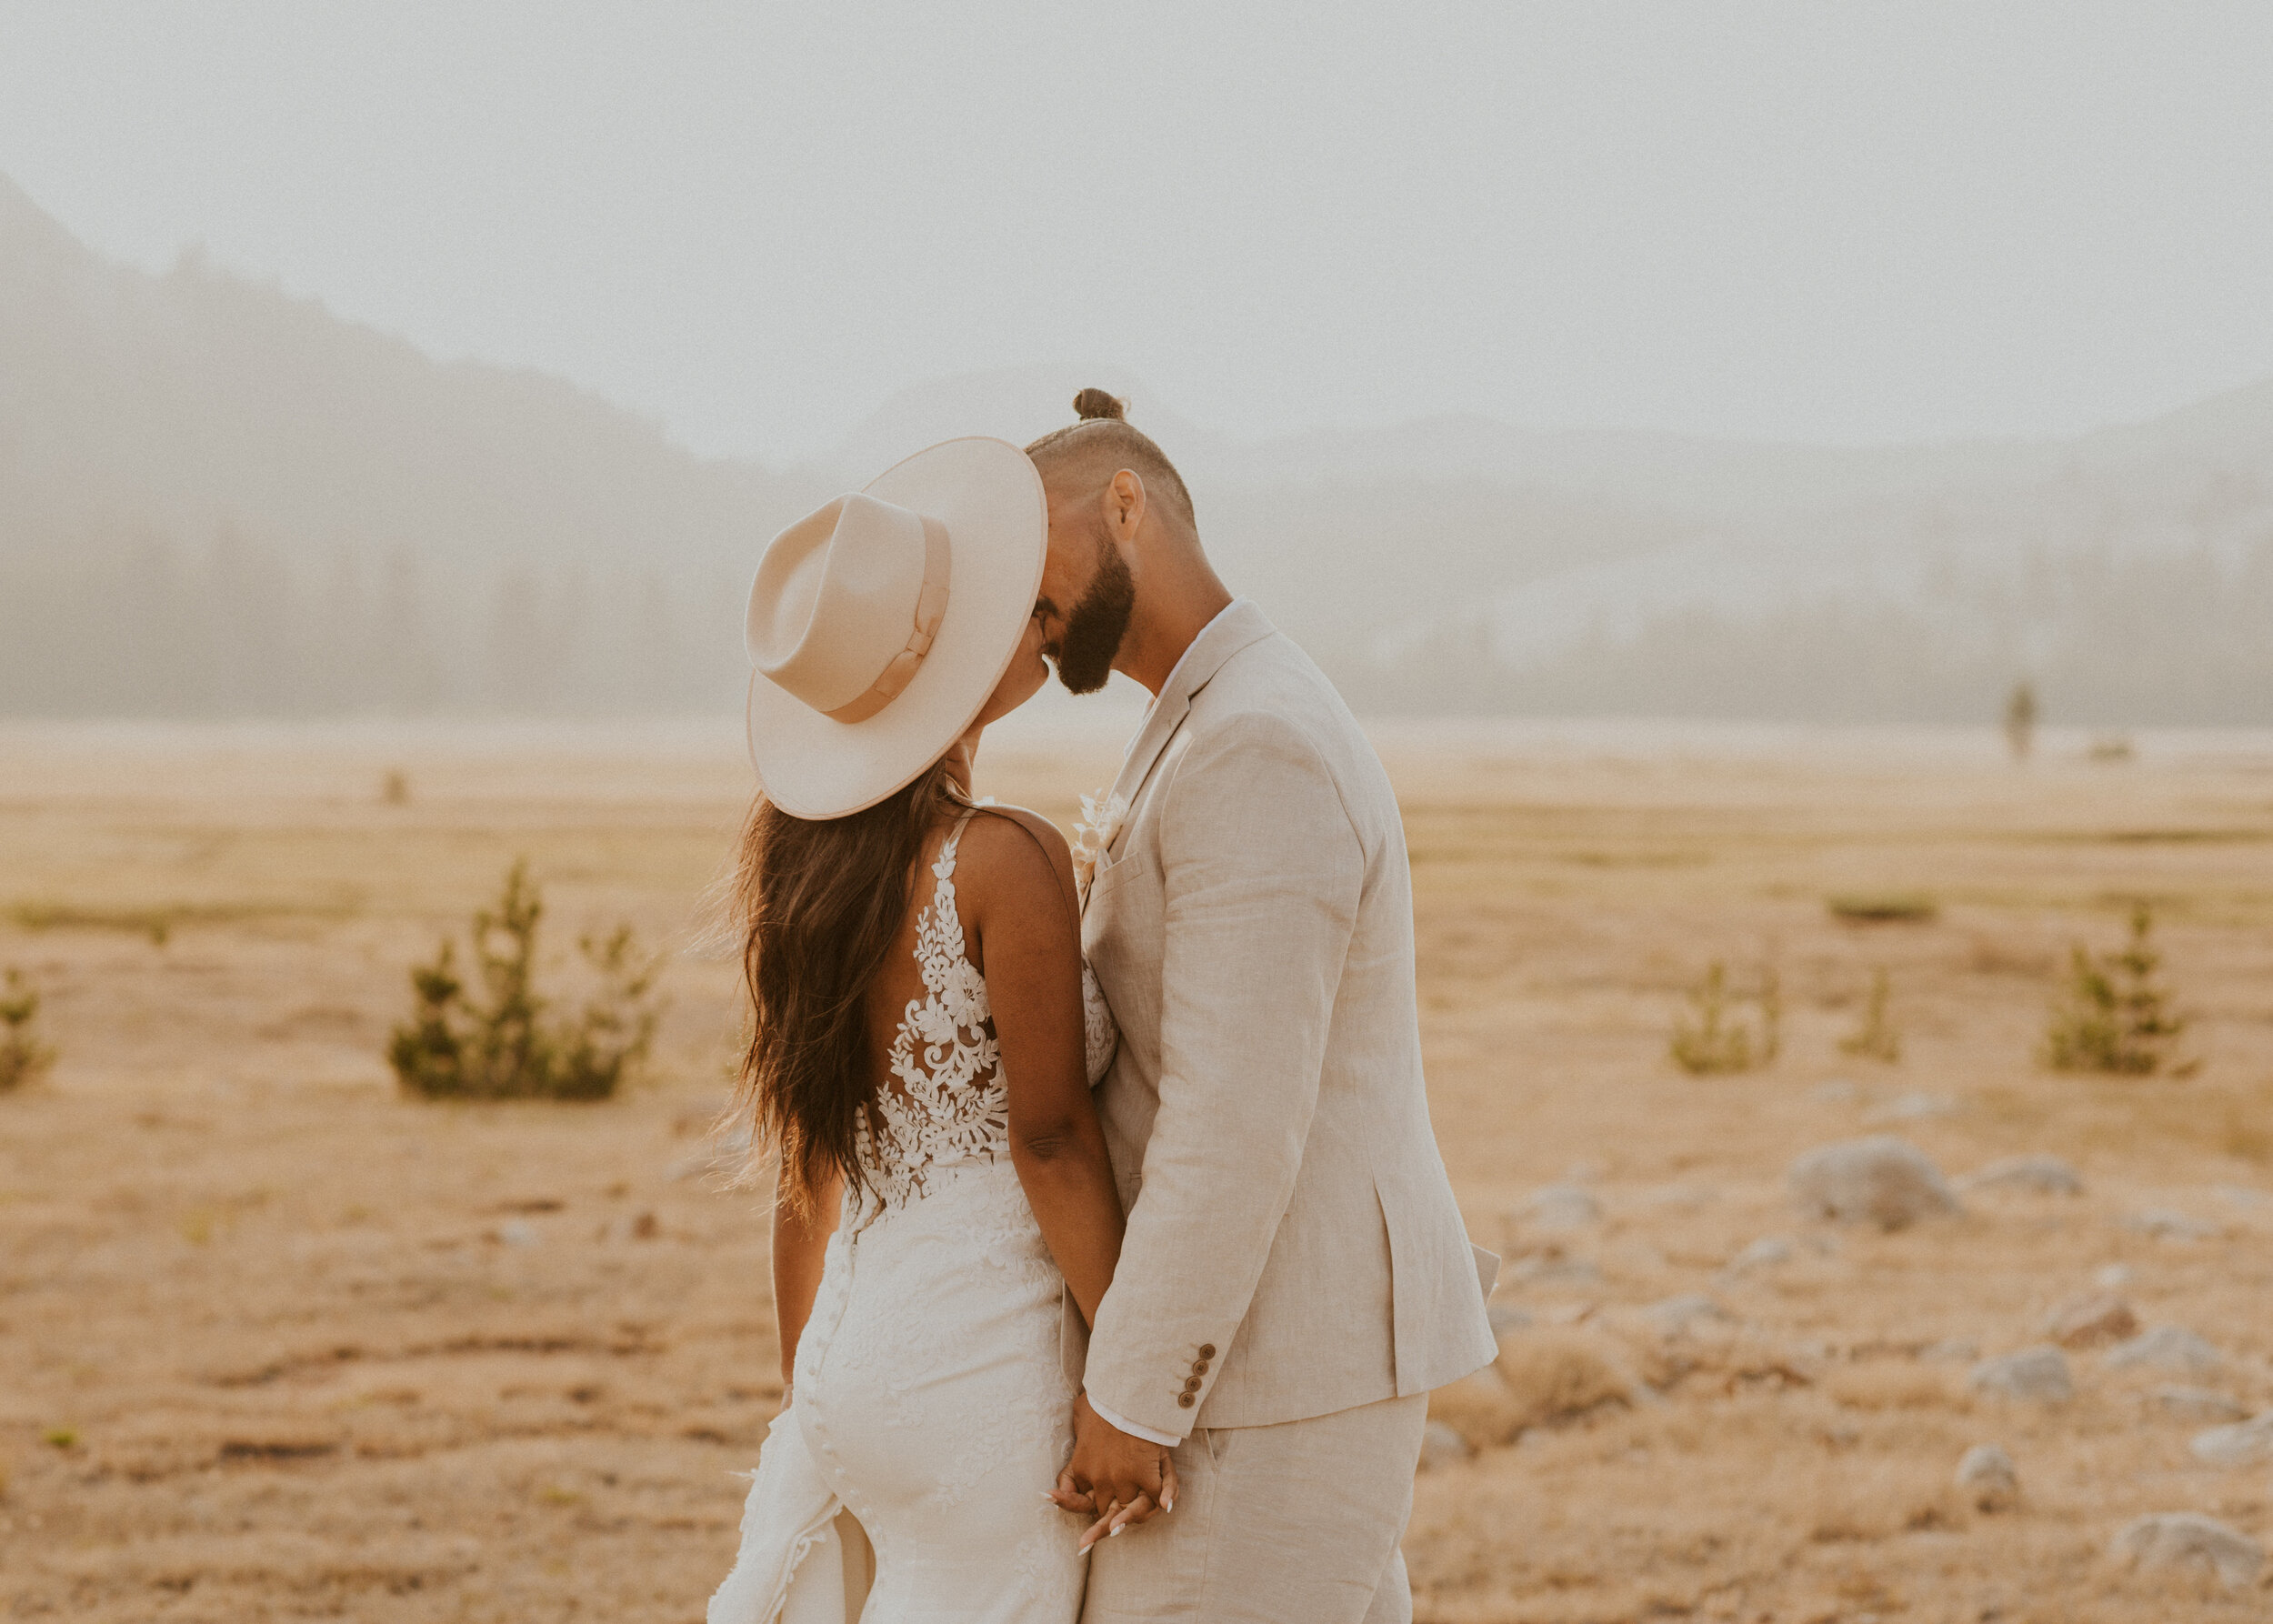 Tuolumne Meadows Elopement | Eloping in Yosemite National Park | Adventure Elopement Wedding | Yosemite Elopement Photographer 